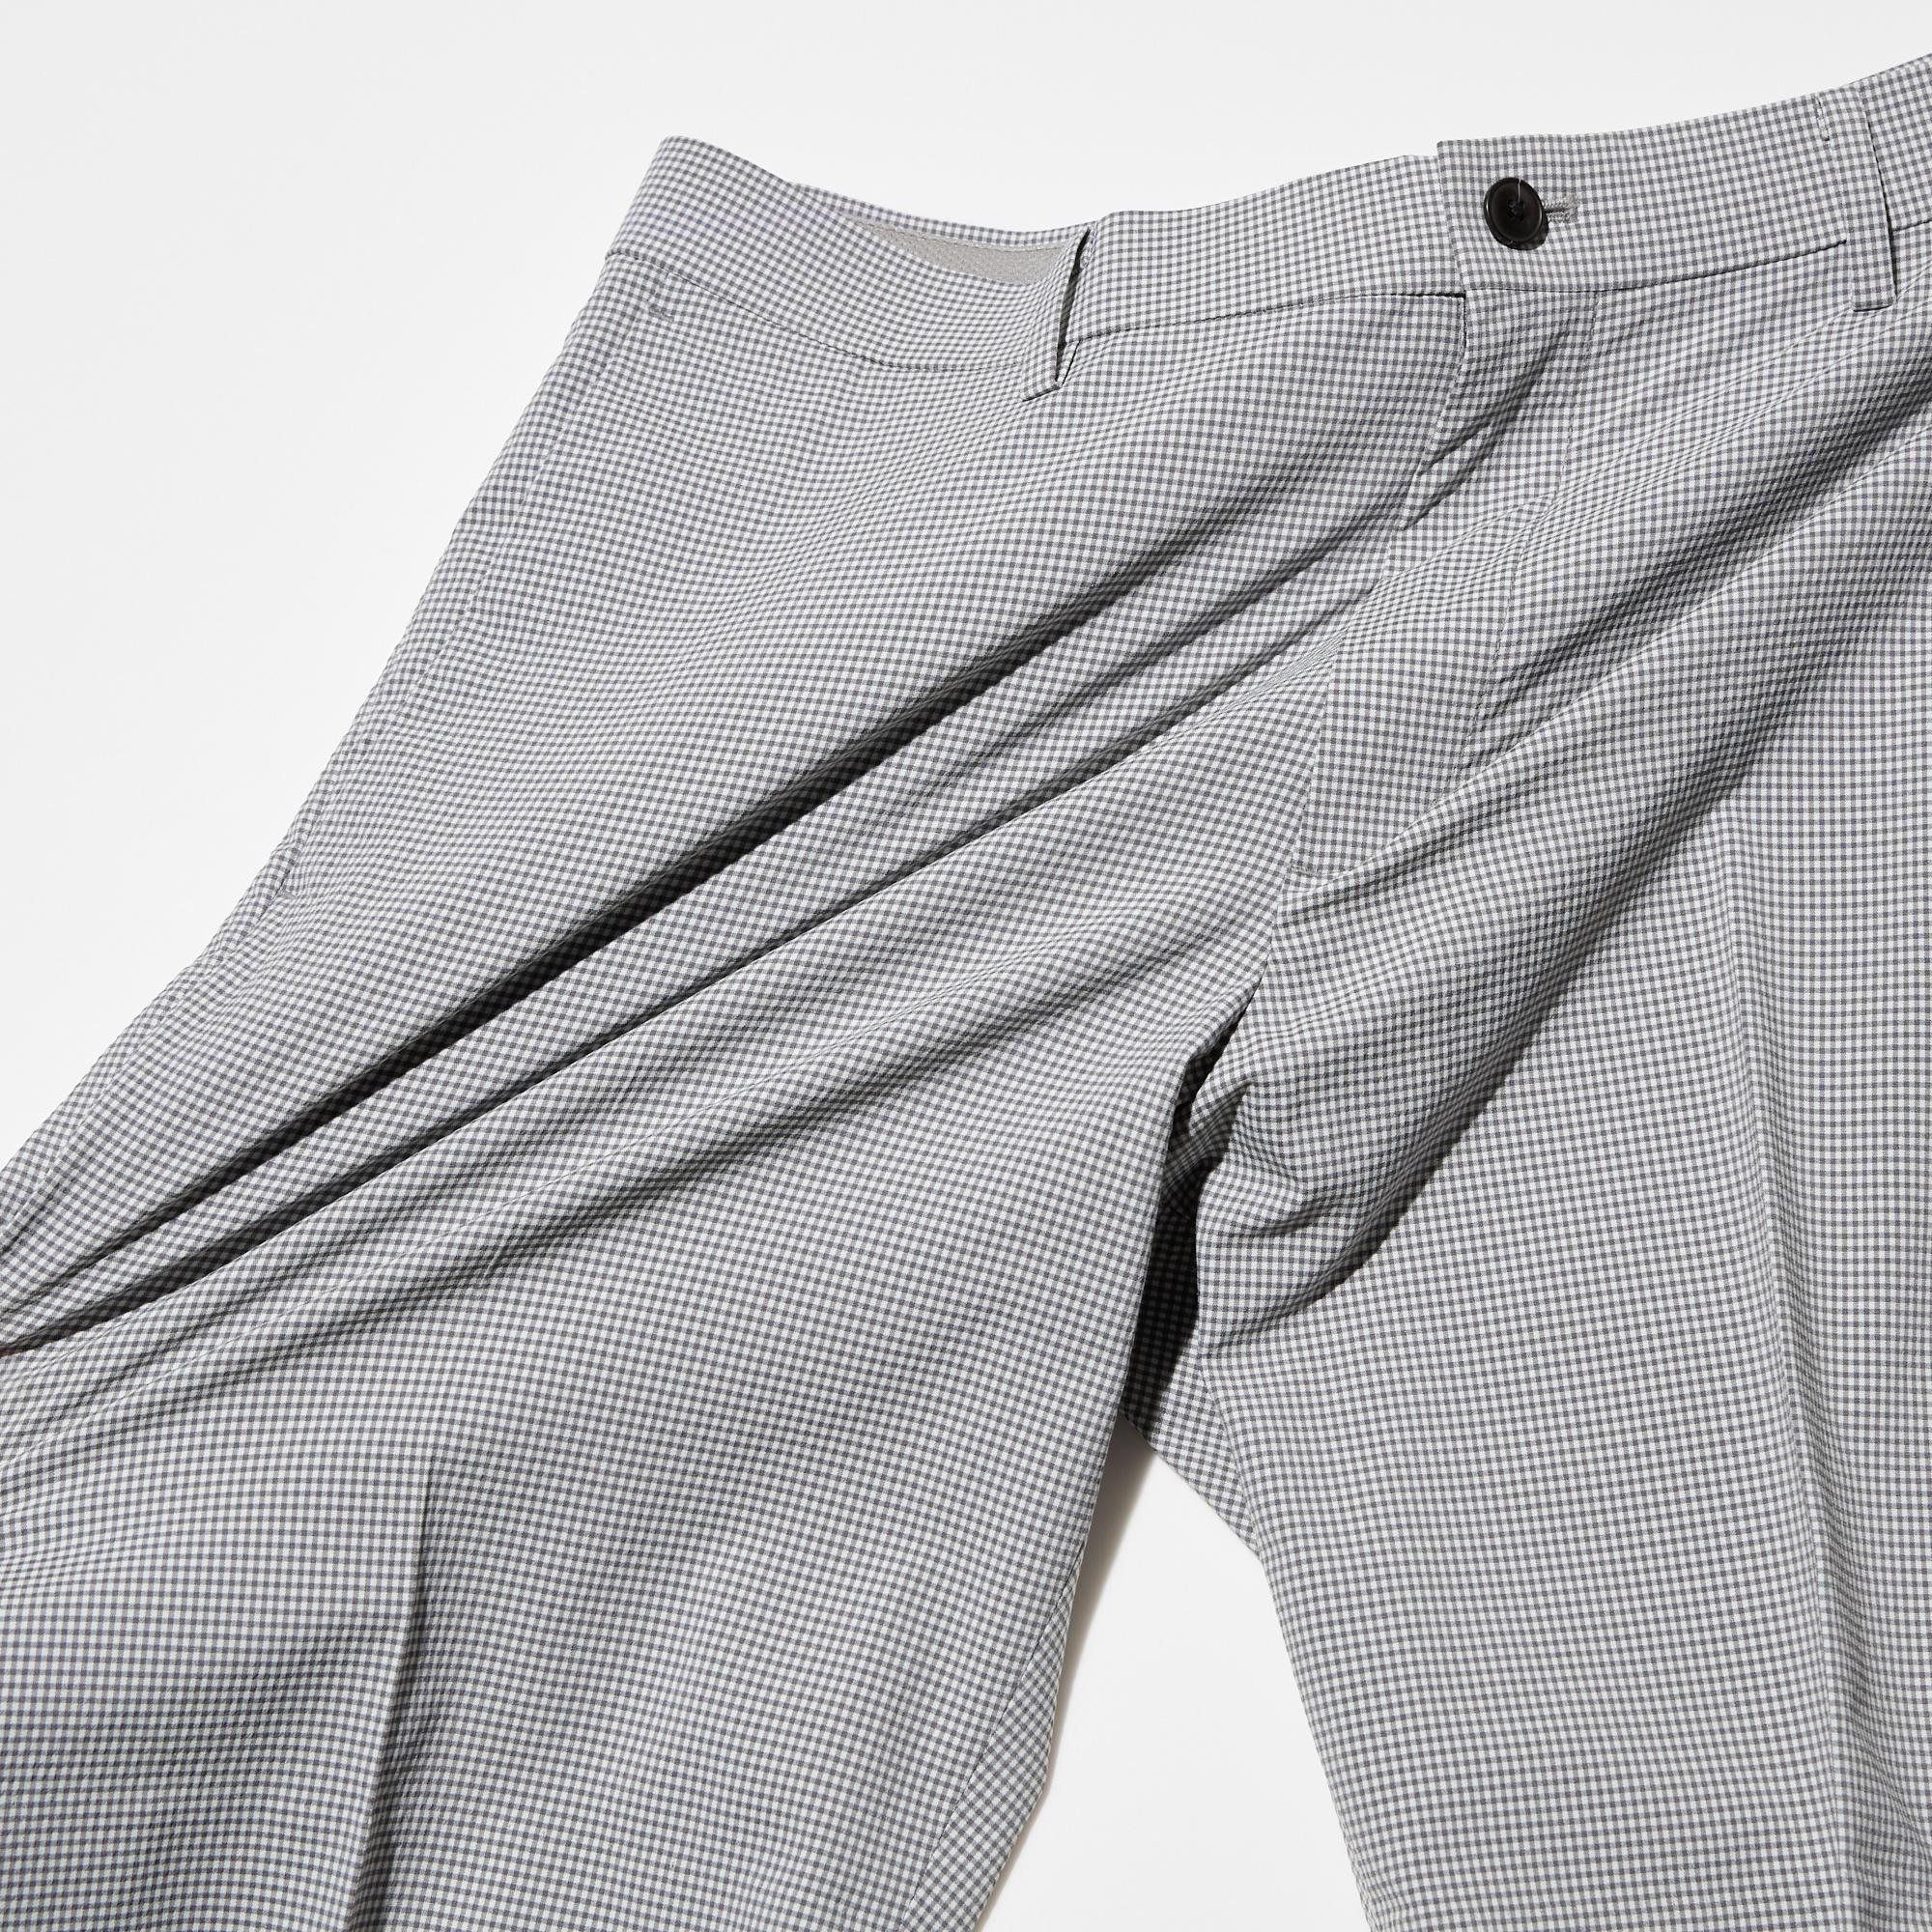 AirSense Printed Shorts (Checked, Wool-Like, 7")